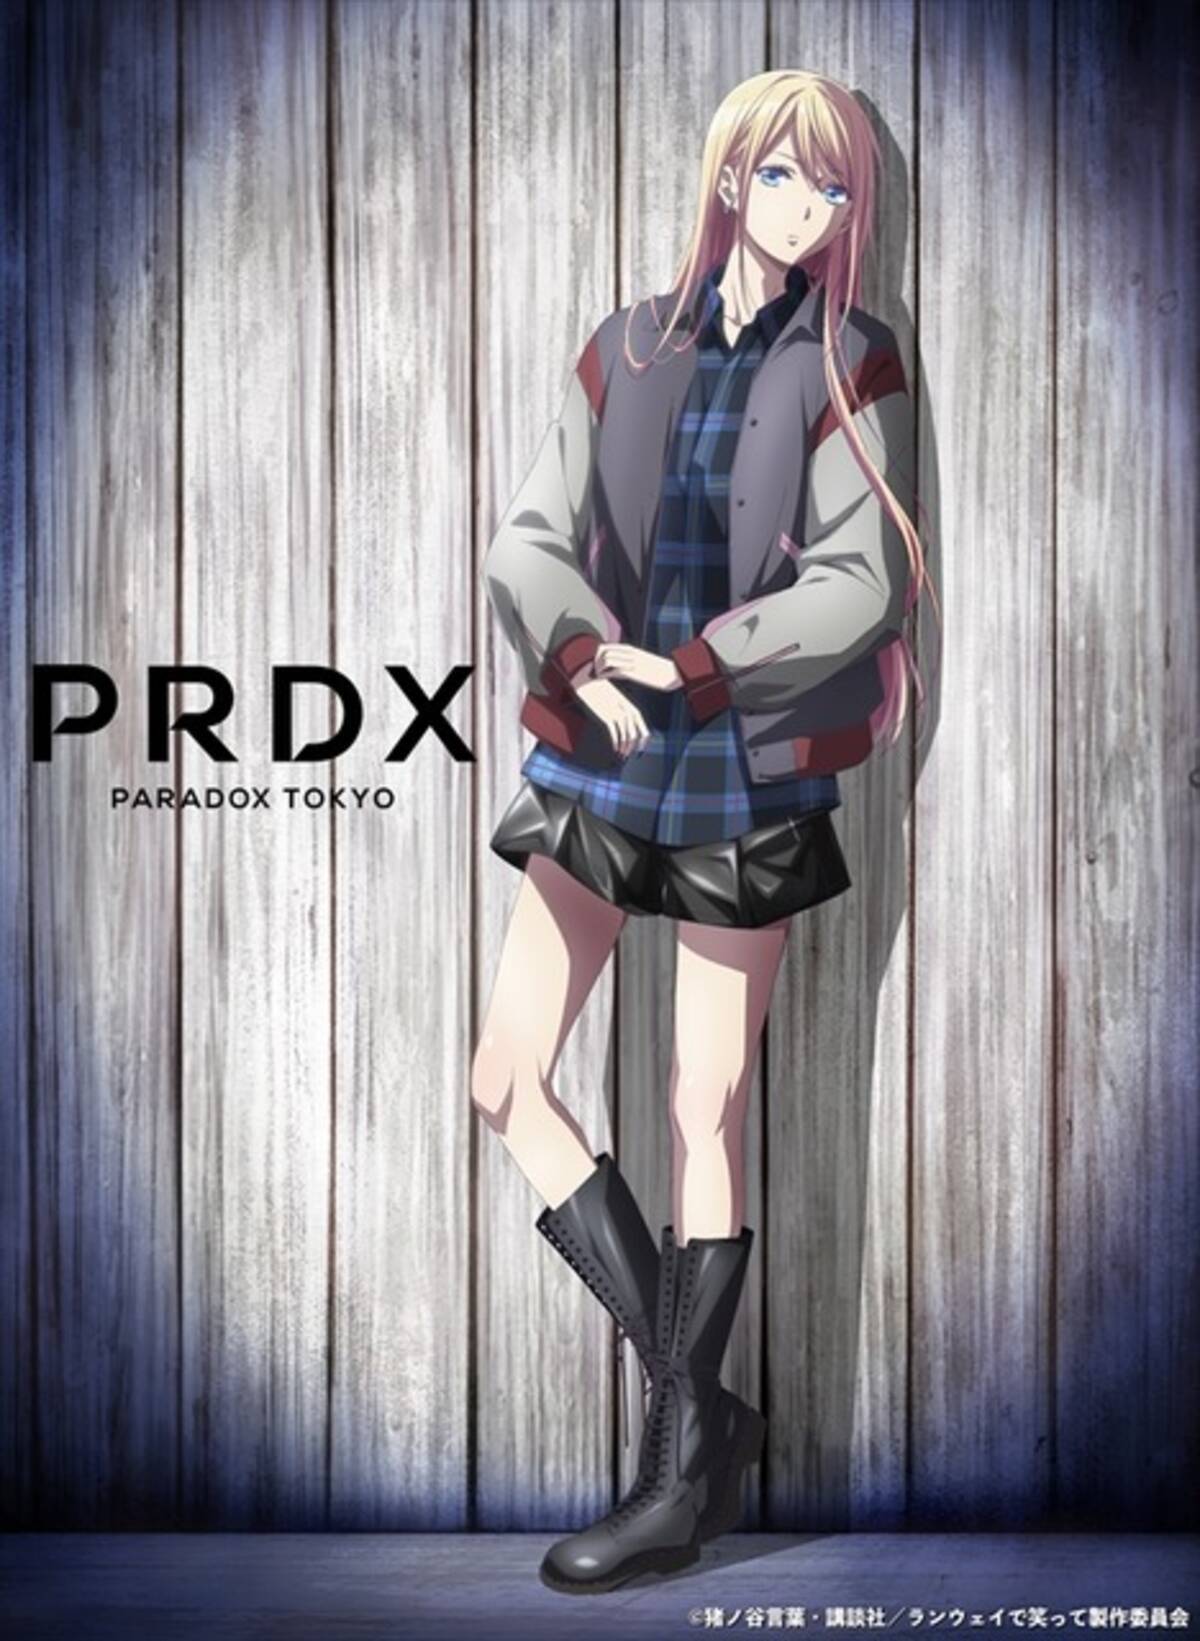 ランウェイで笑って 千雪がクールにキメる Prdx Paradox Tokyo とコラボ 年2月7日 エキサイトニュース